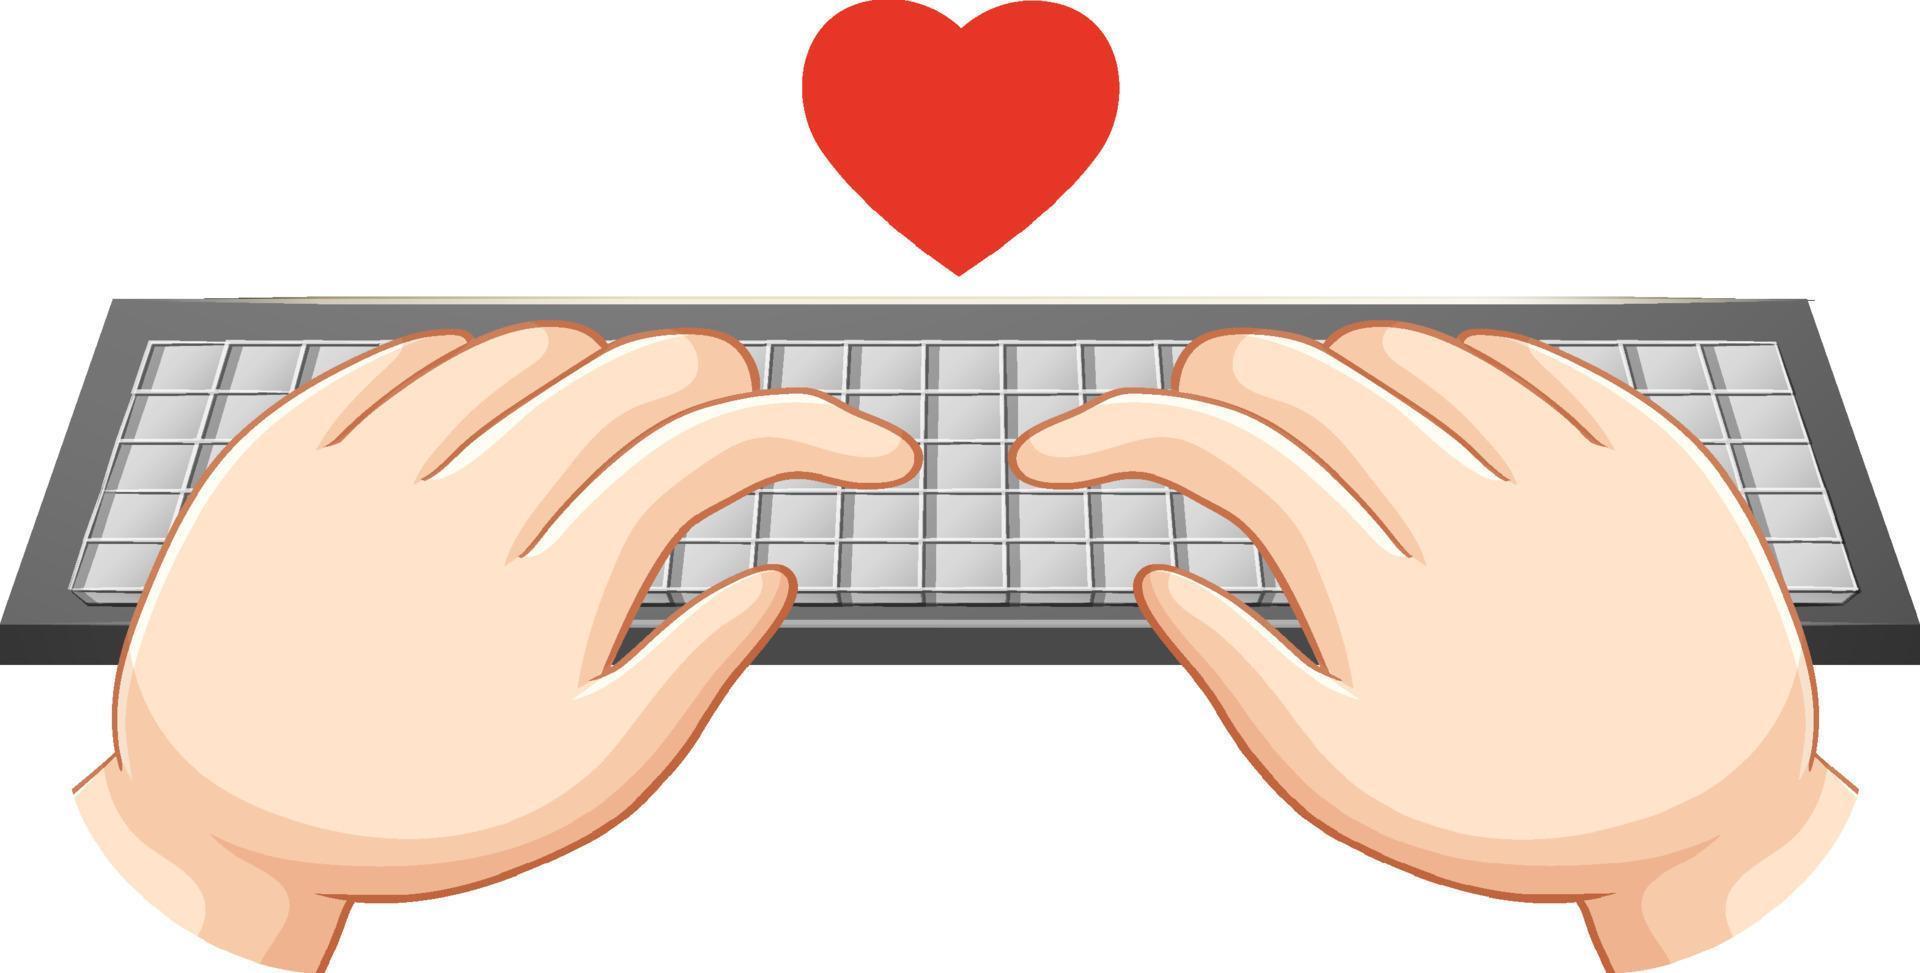 mãos digitando no teclado do computador vetor